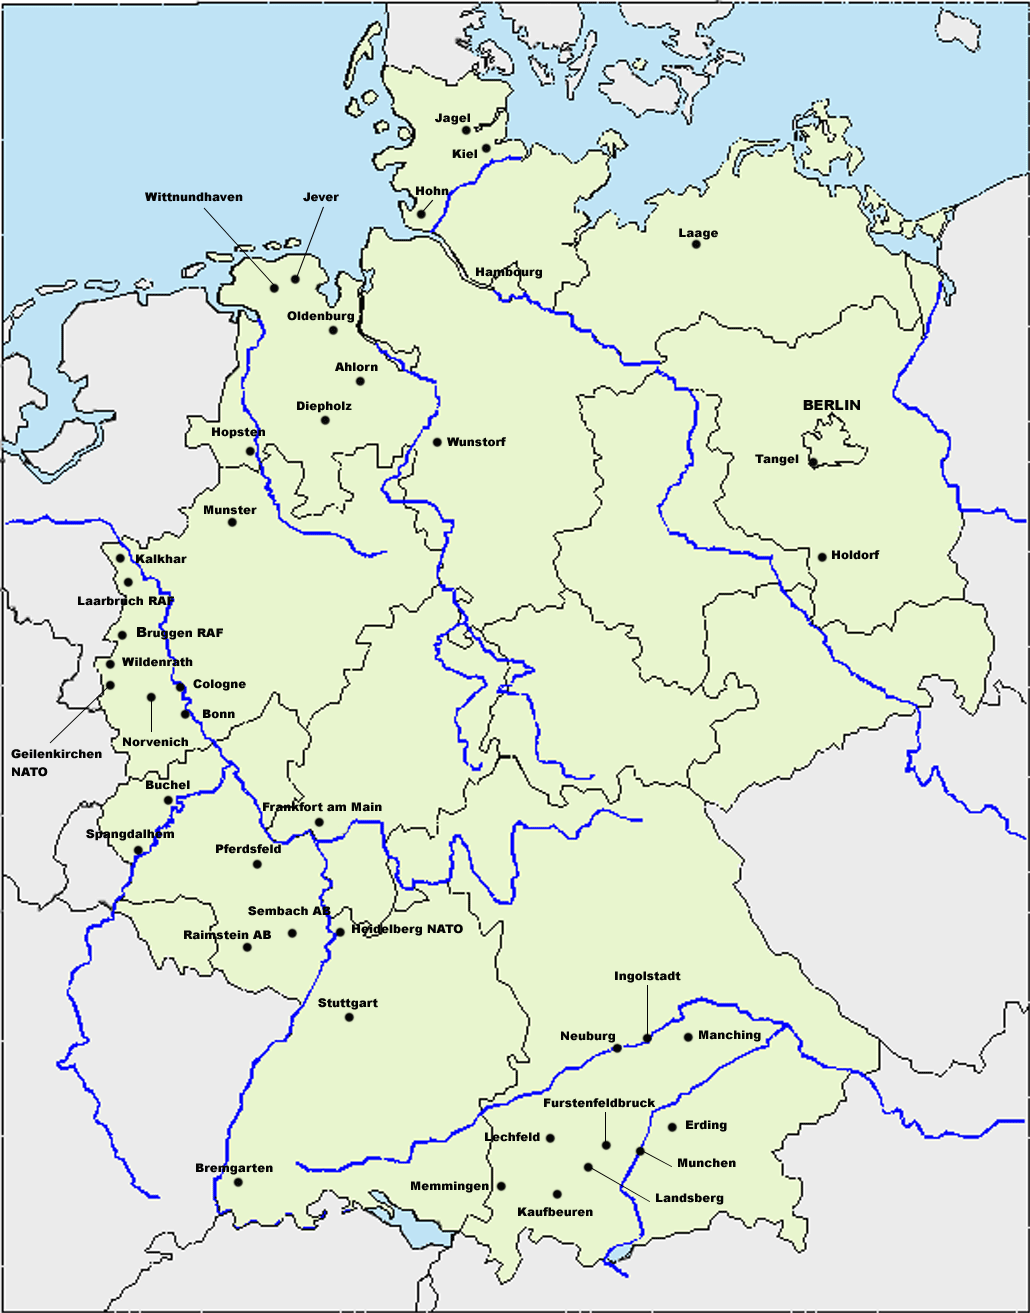 Bases de las Fuerzas aereas en Alemania